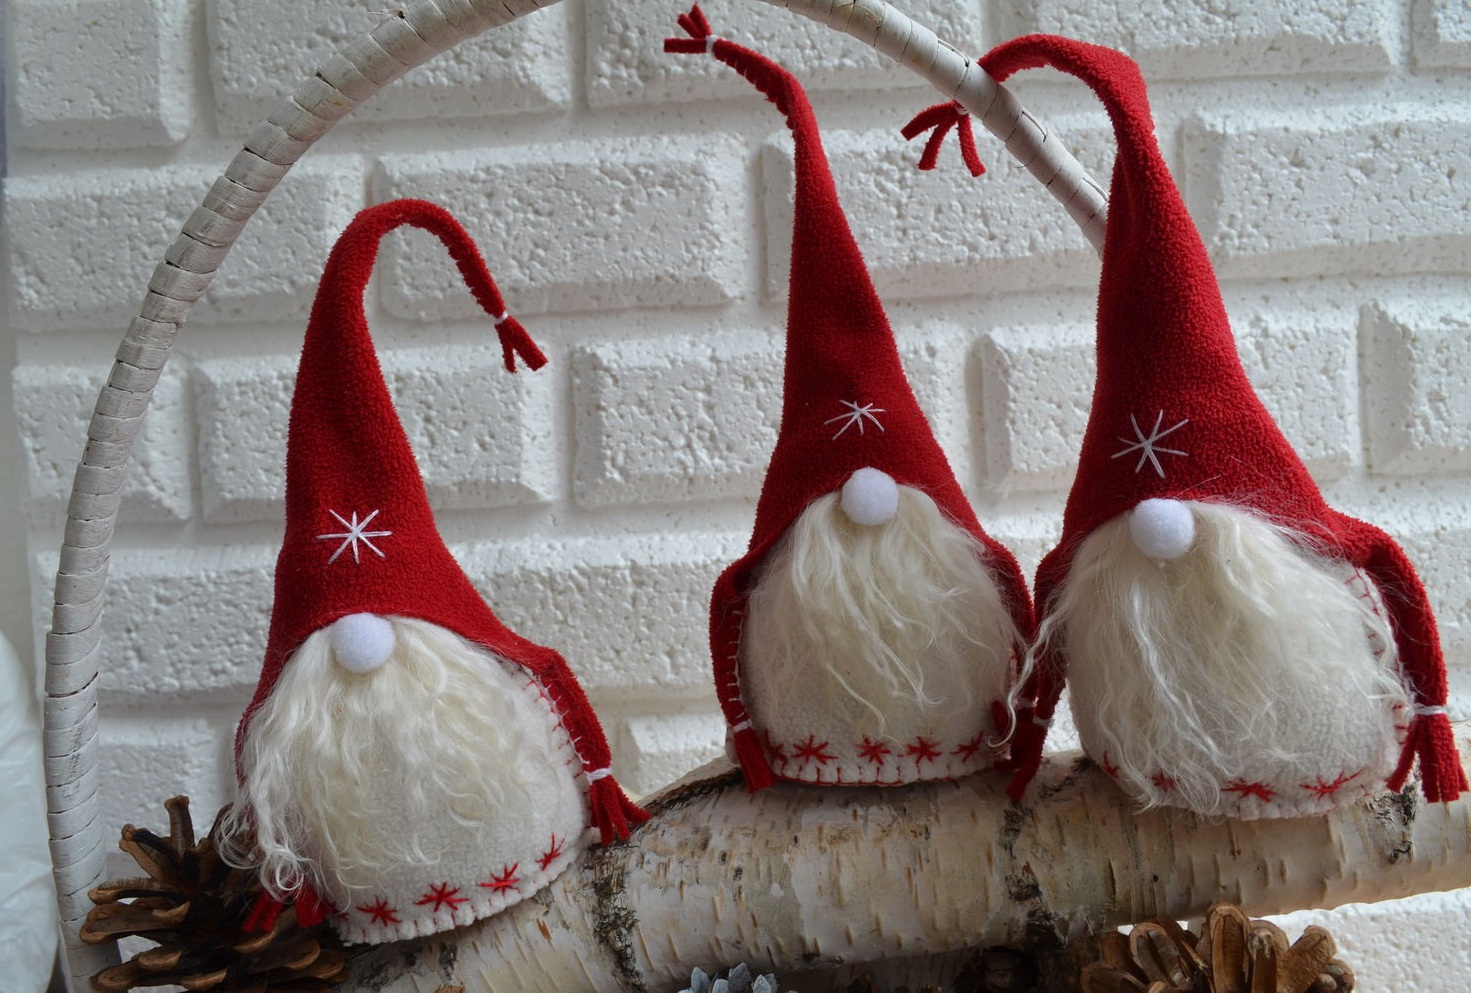 Tiga gnomes buatan sendiri dari sisa kain